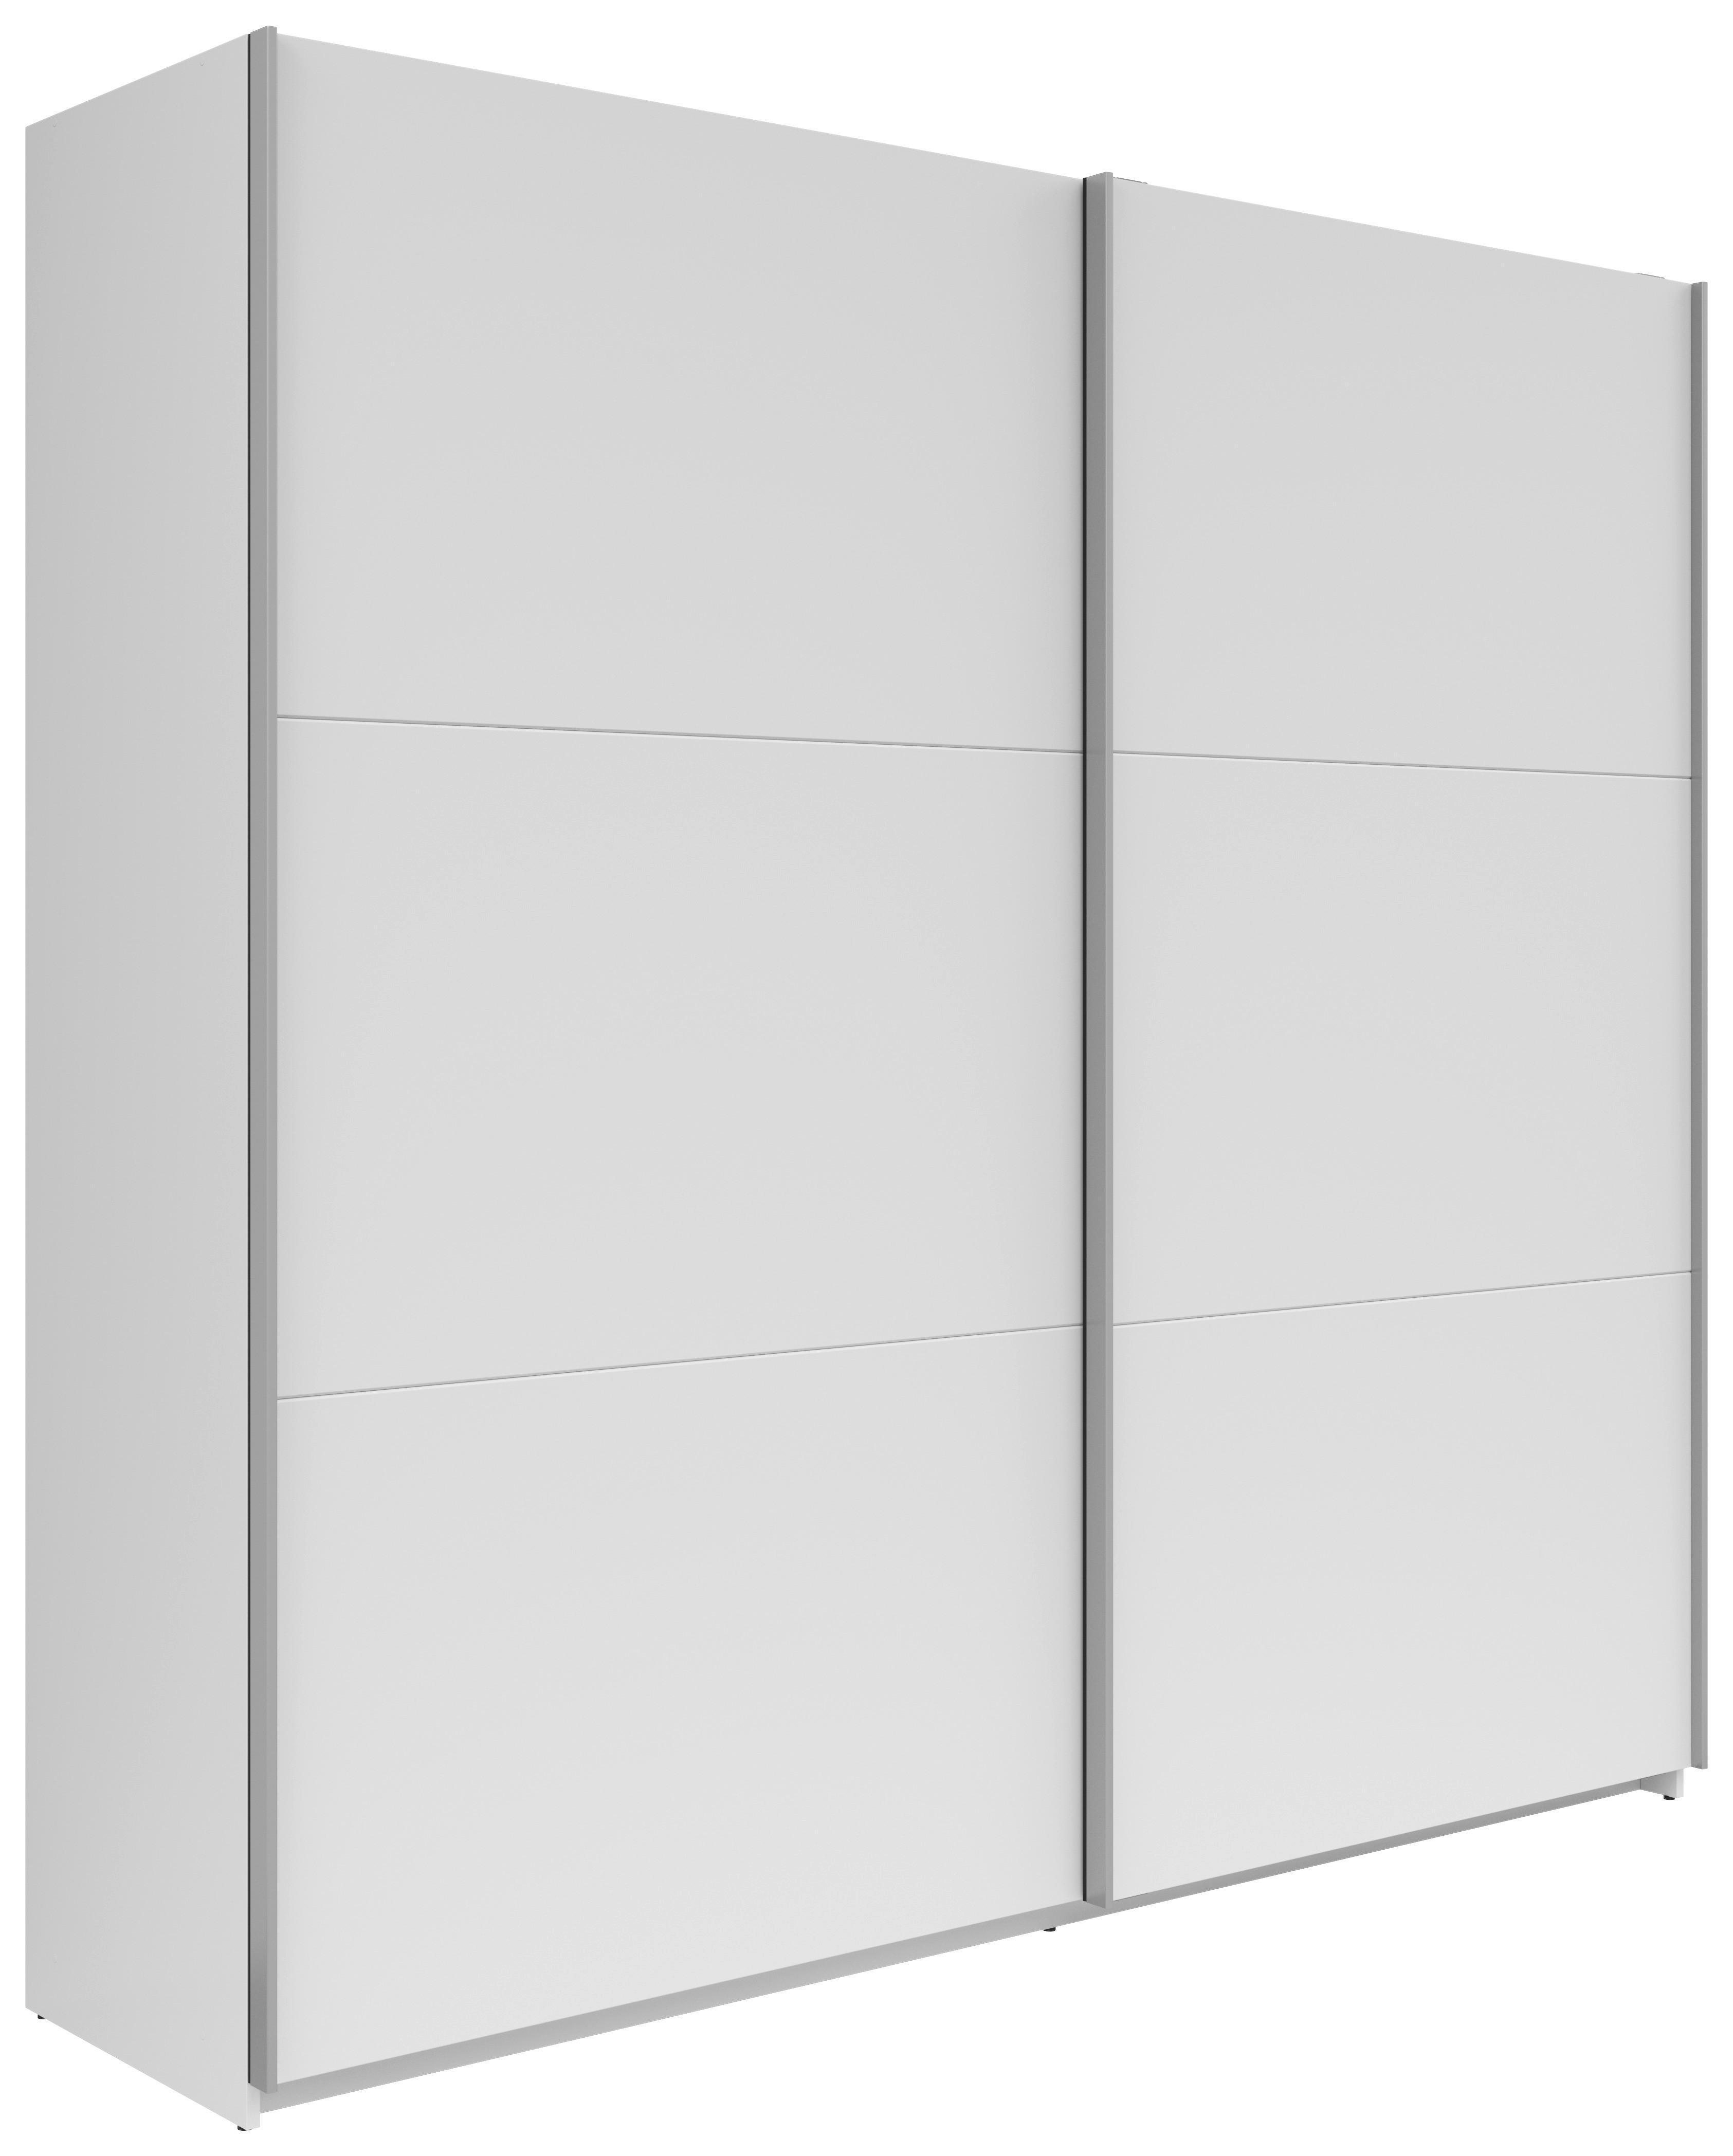 Šatní Skříň S Posuvnými Dveřmi Saturn,bílá - bílá/barvy stříbra, Konvenční, kov/kompozitní dřevo (218/210/59cm)